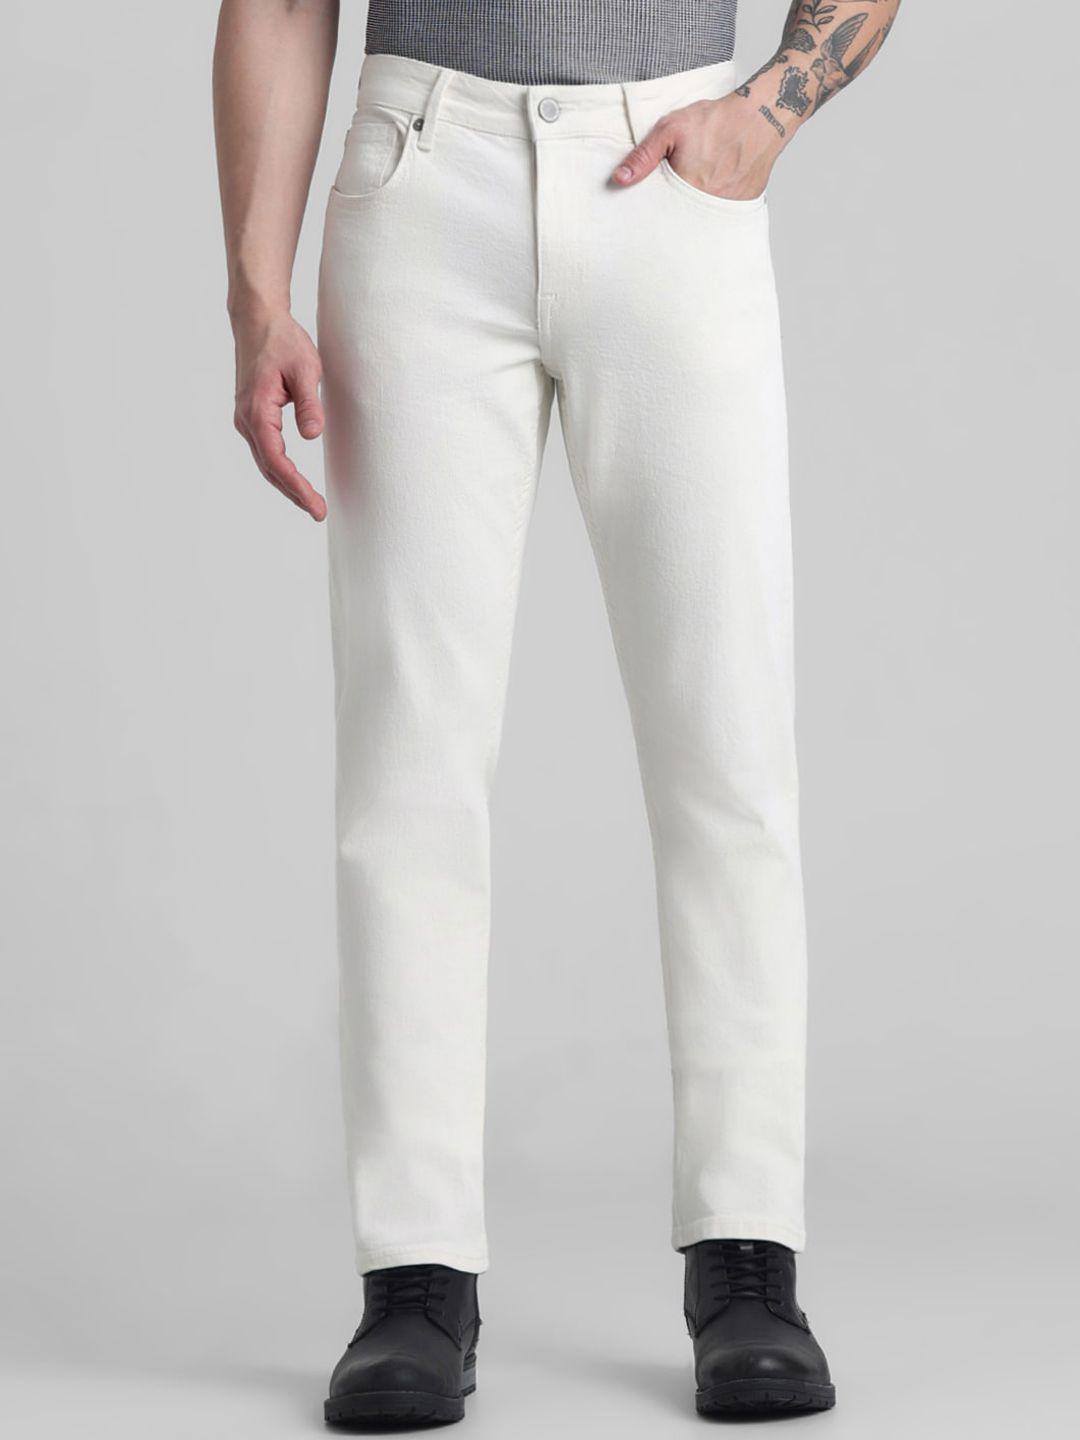 jack-&-jones-men-slim-fit-clean-look-low-rise-stretchable-jeans